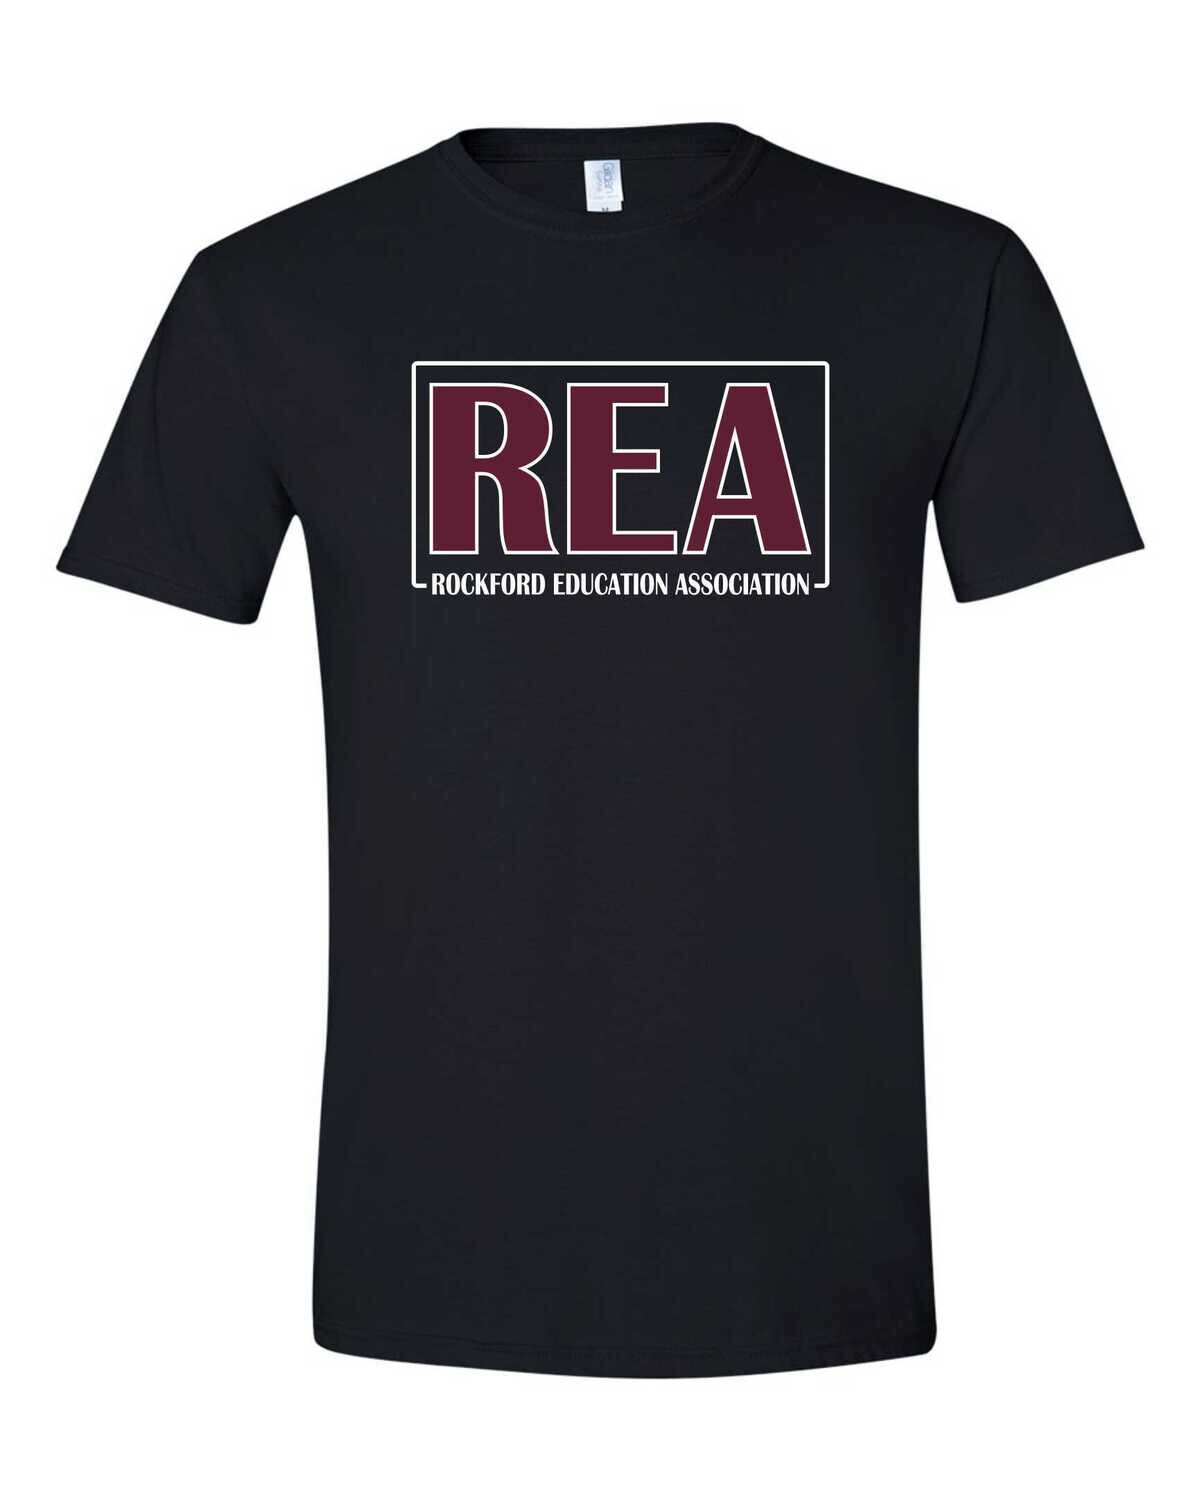 Rockford Education Association T-shirt, Black, GLITTER LOGO